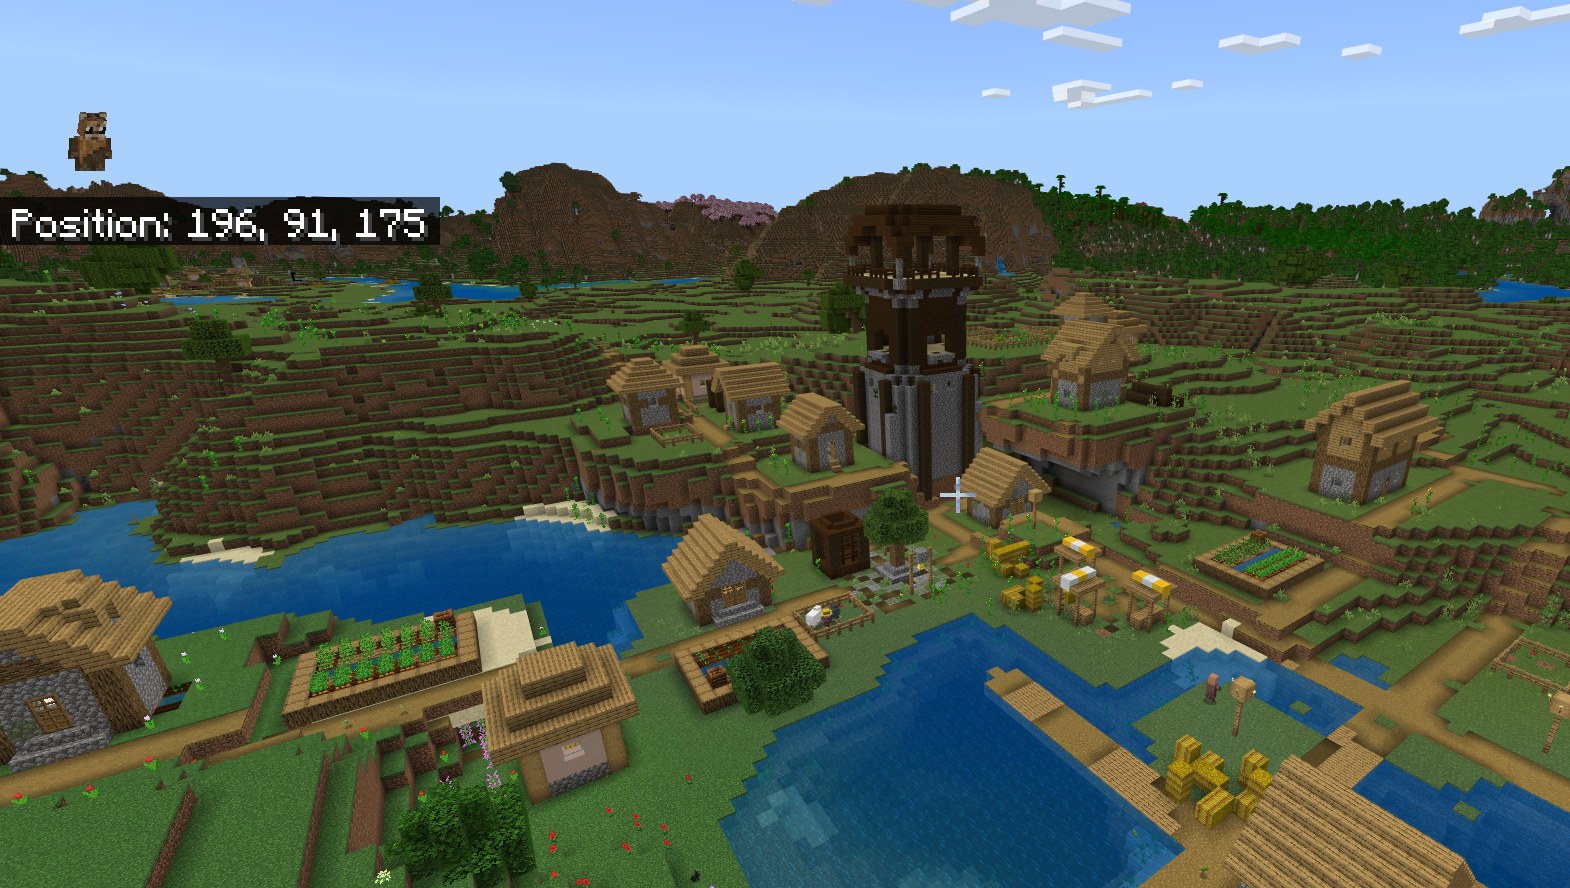 Wioska Minecraft z placówką Pillagera siedzącą pośrodku